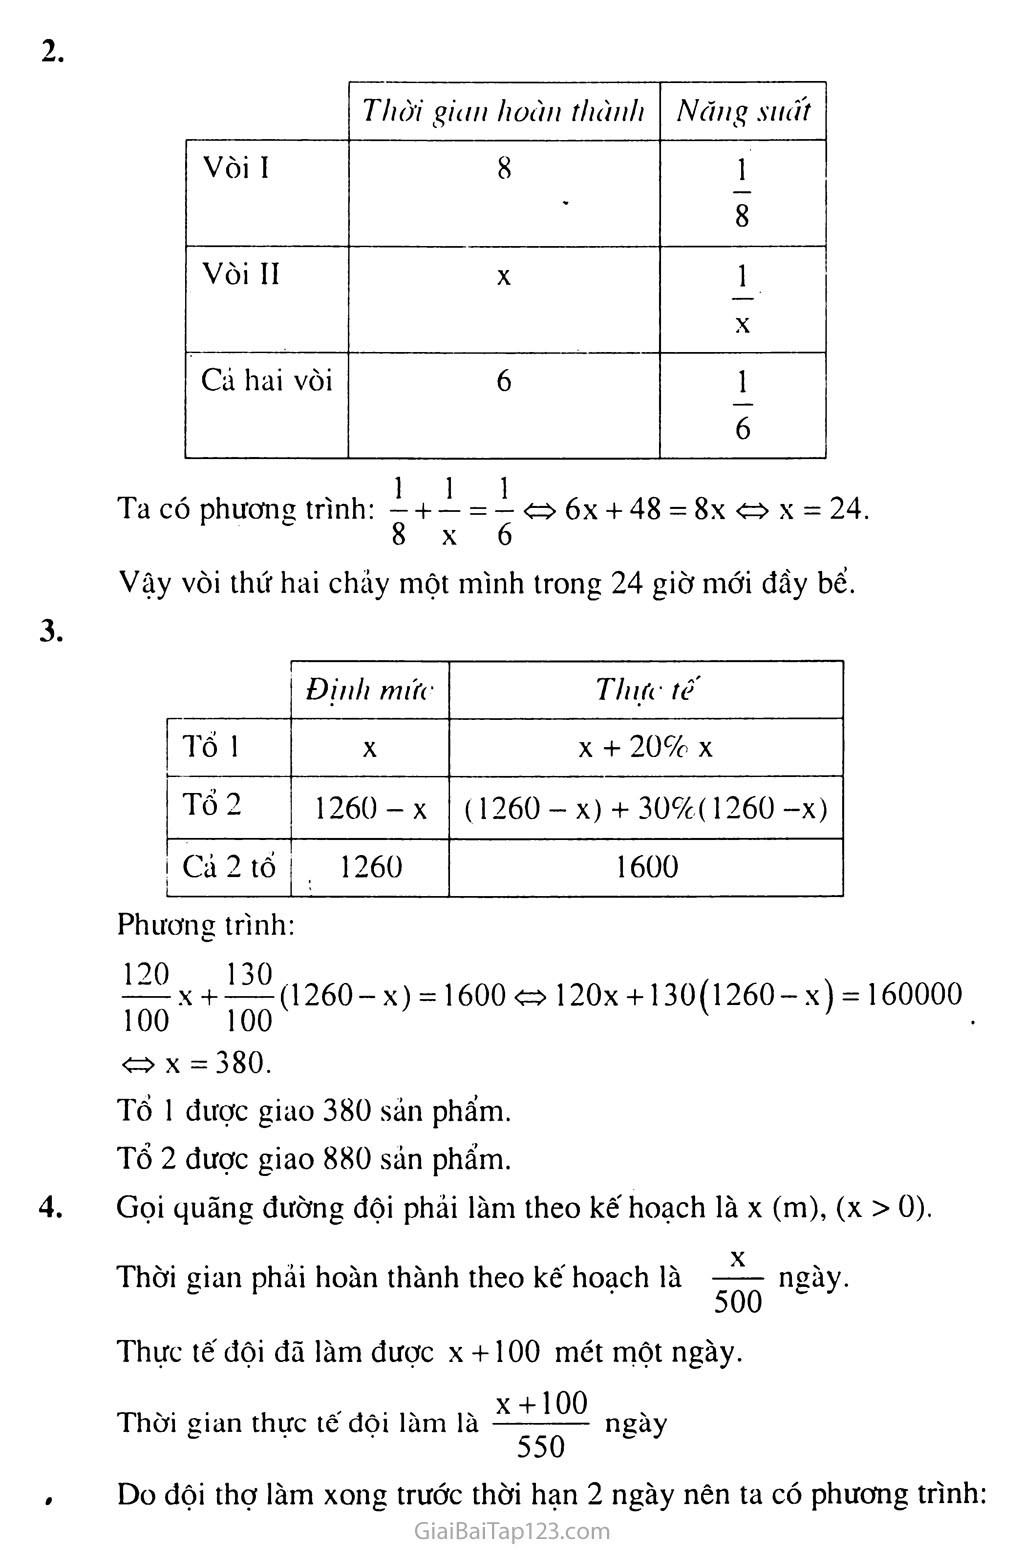 Bài 6. Giải bài toán bằng cách lập phương trình trang 5